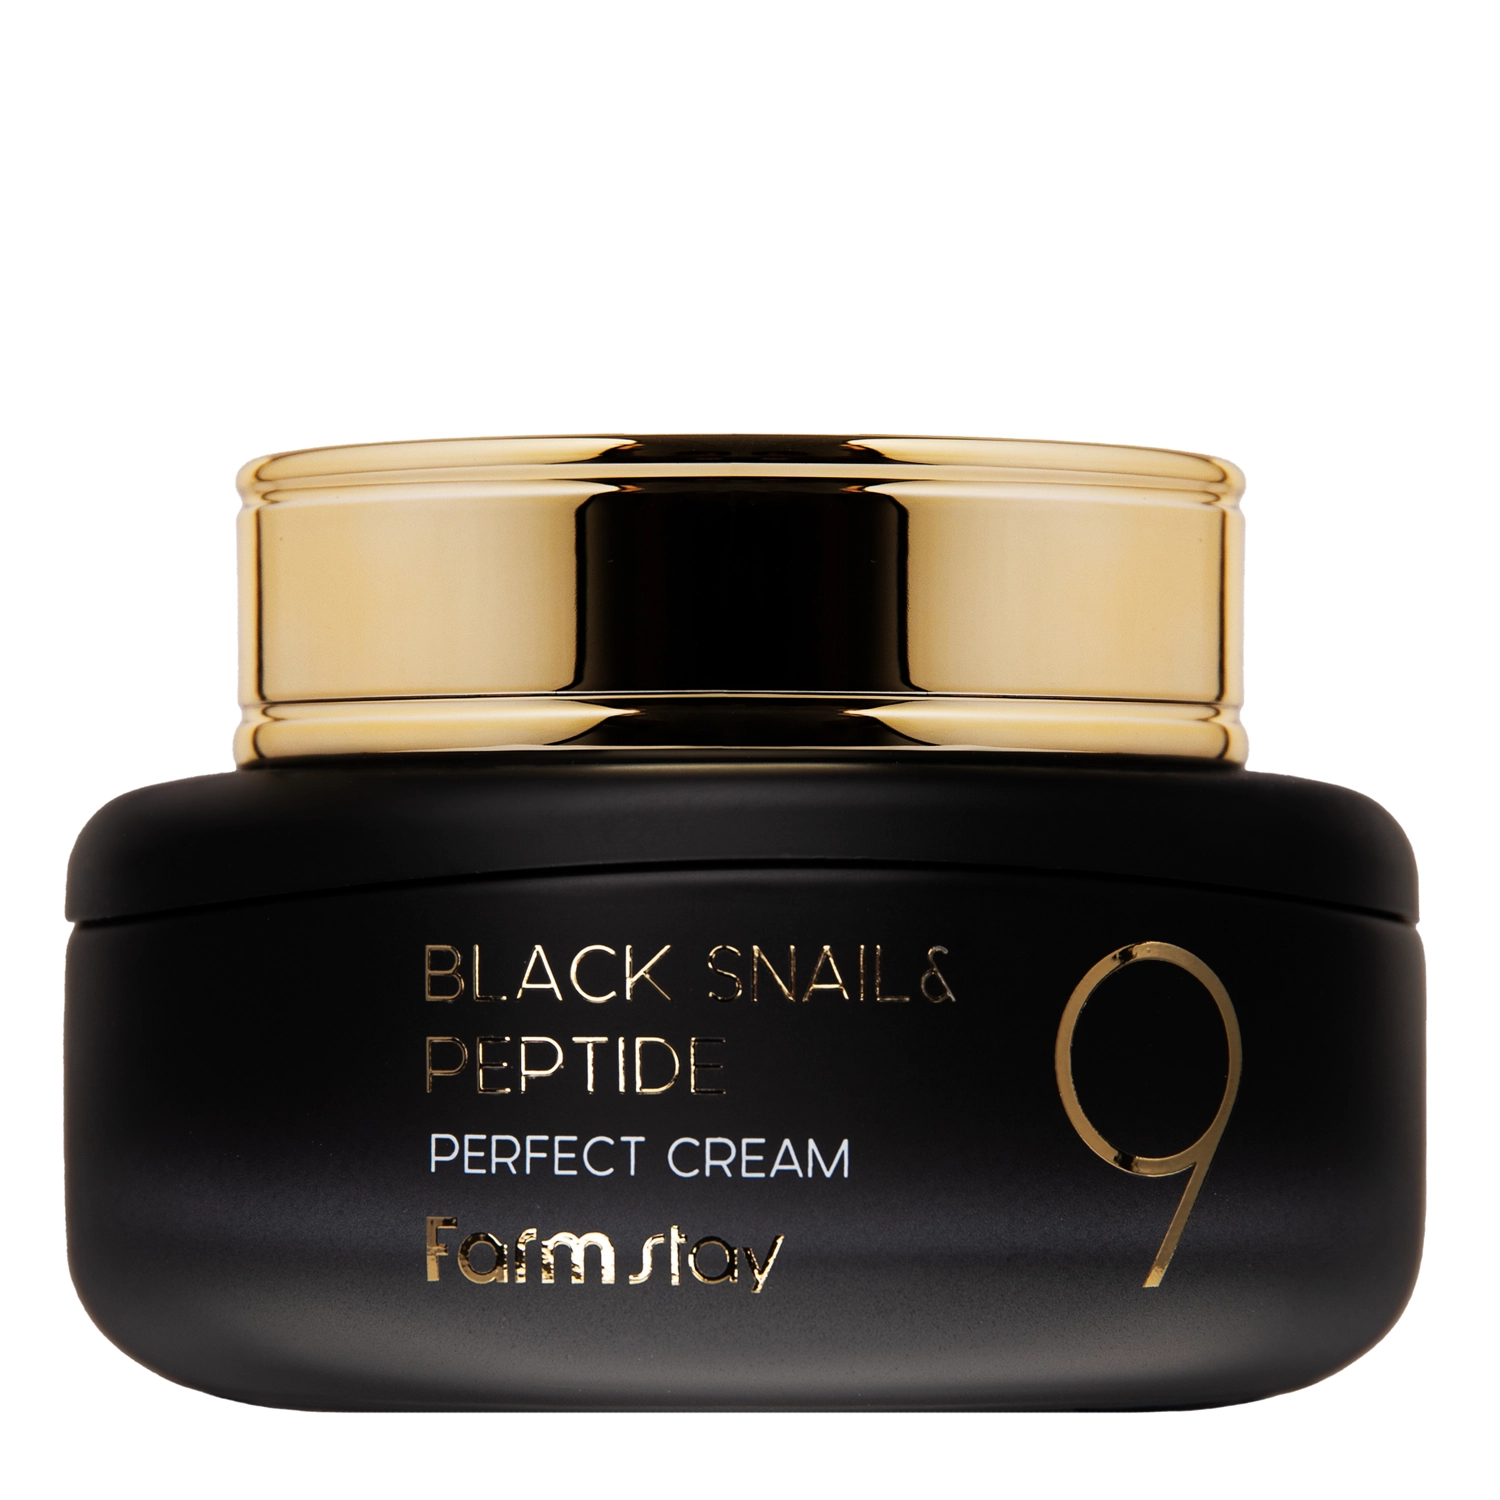 Farmstay - Black Snail & Peptide 9 Perfect Cream - Revitalizáló Arckrém Peptidekkel és Csiganyálkával - 55ml